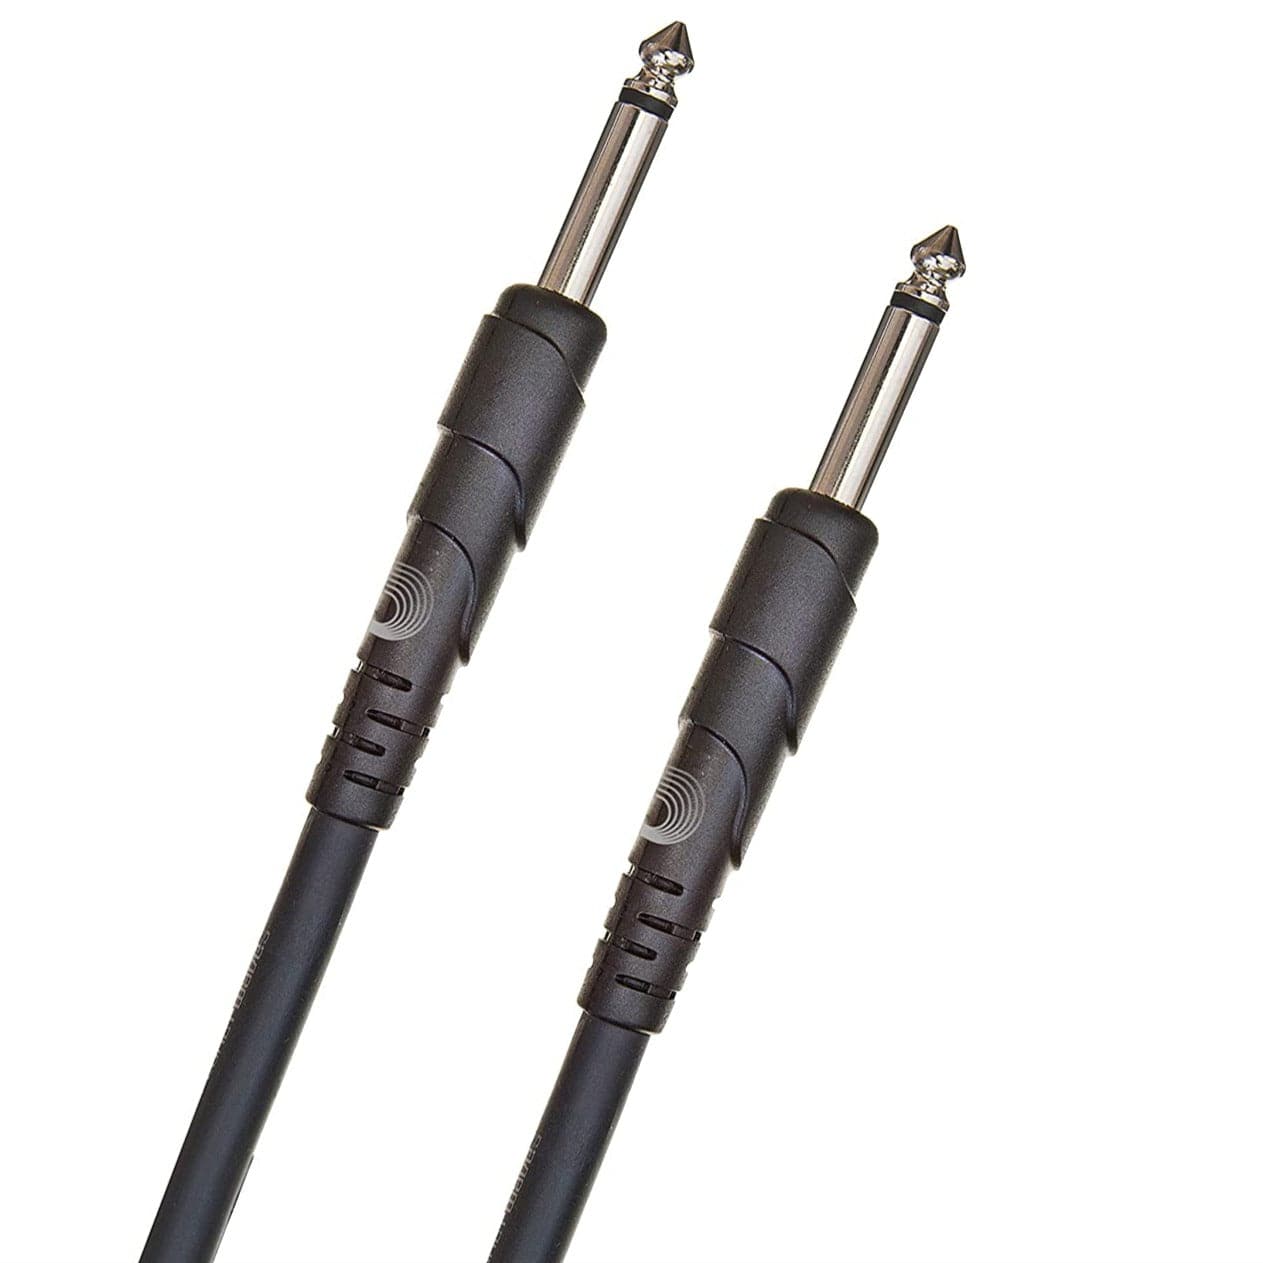 D'Addario Classic Series Speaker Cable - 10foot (3meters)